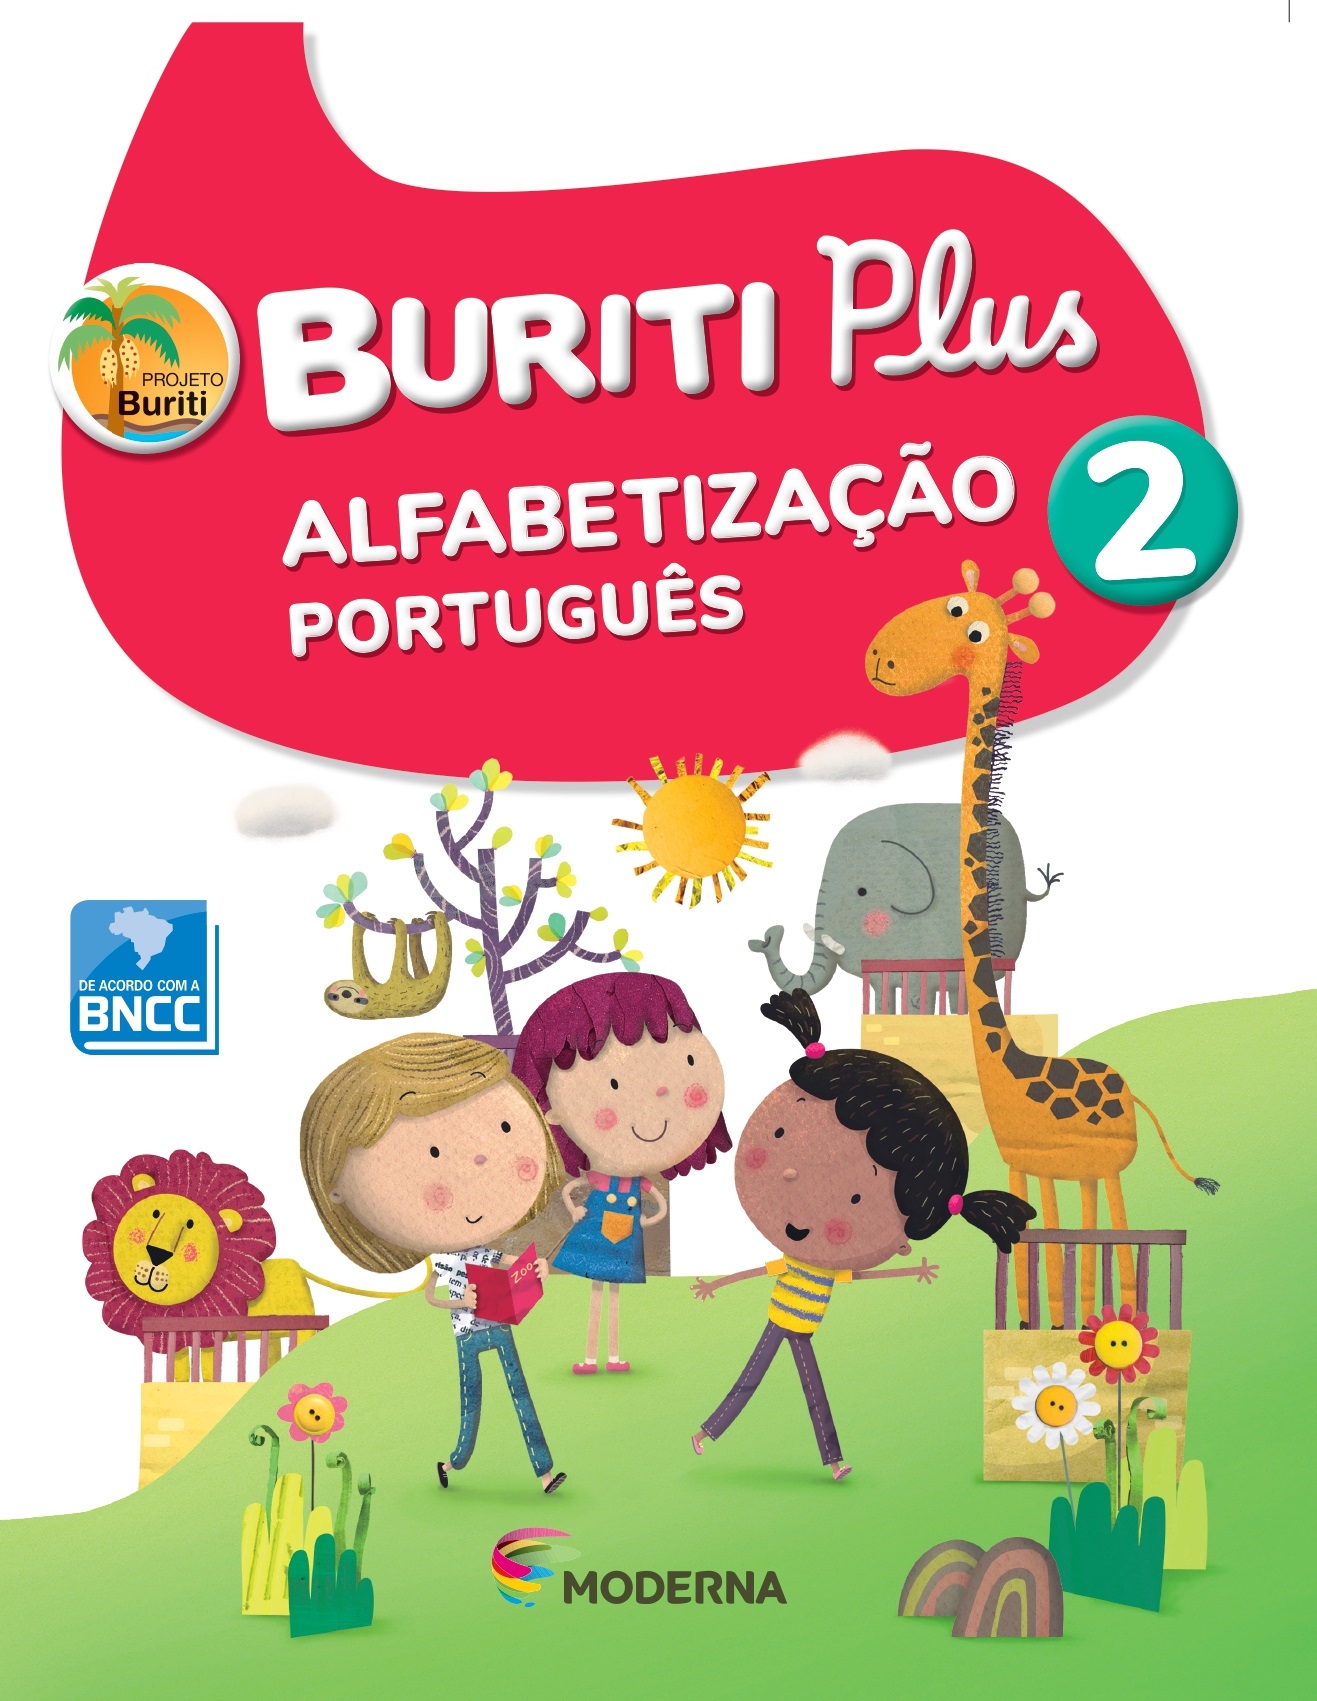 Buriti Plus Alfabetização - Port 2